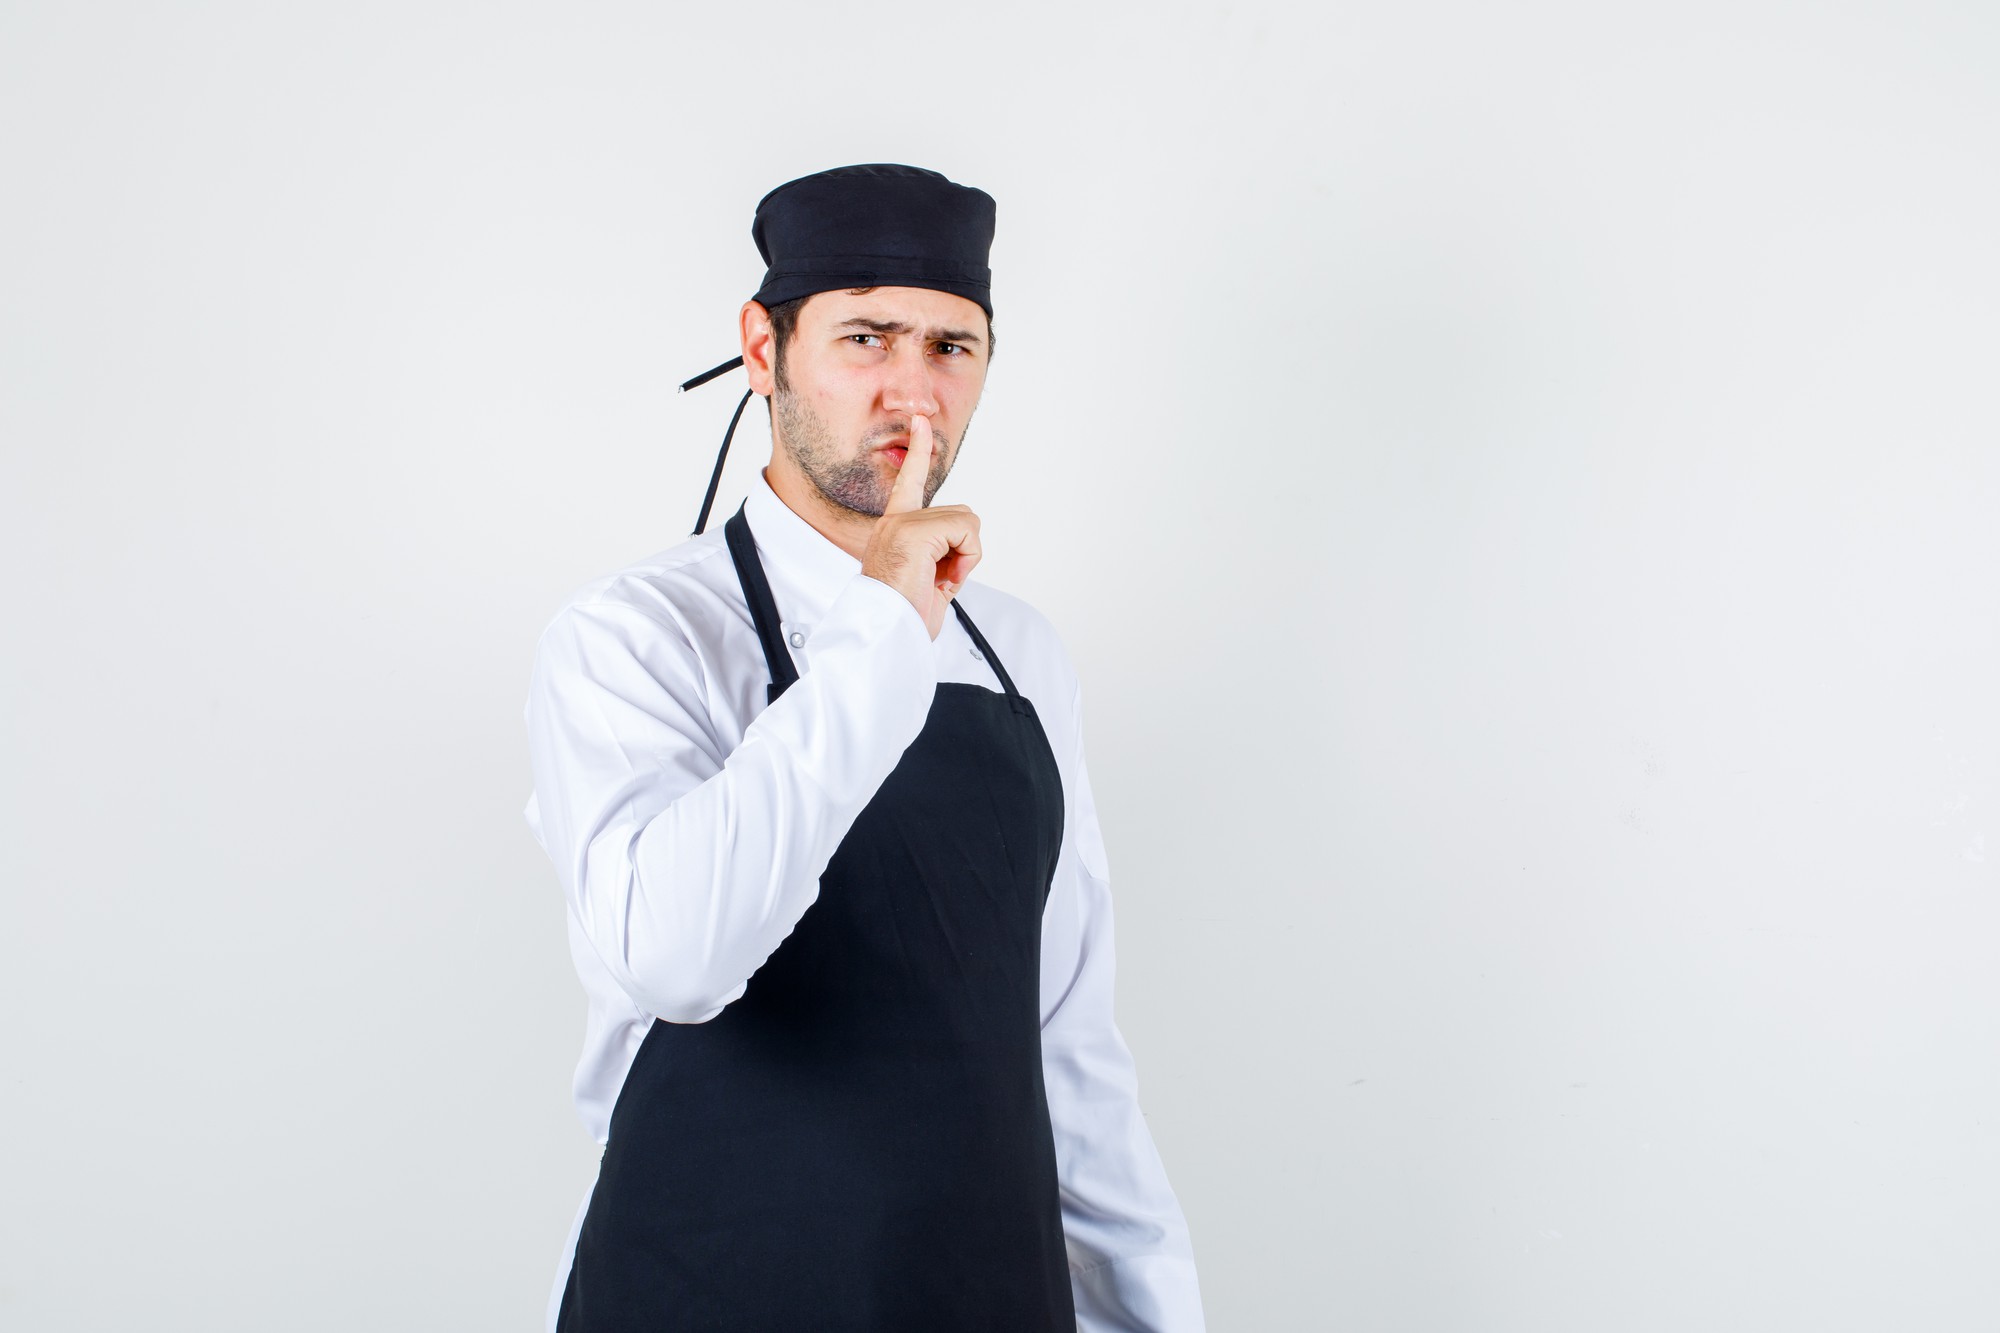 Chef maschio in uniforme, grembiule che mostra gesto di silenzio mentre accigliato, vista frontale.